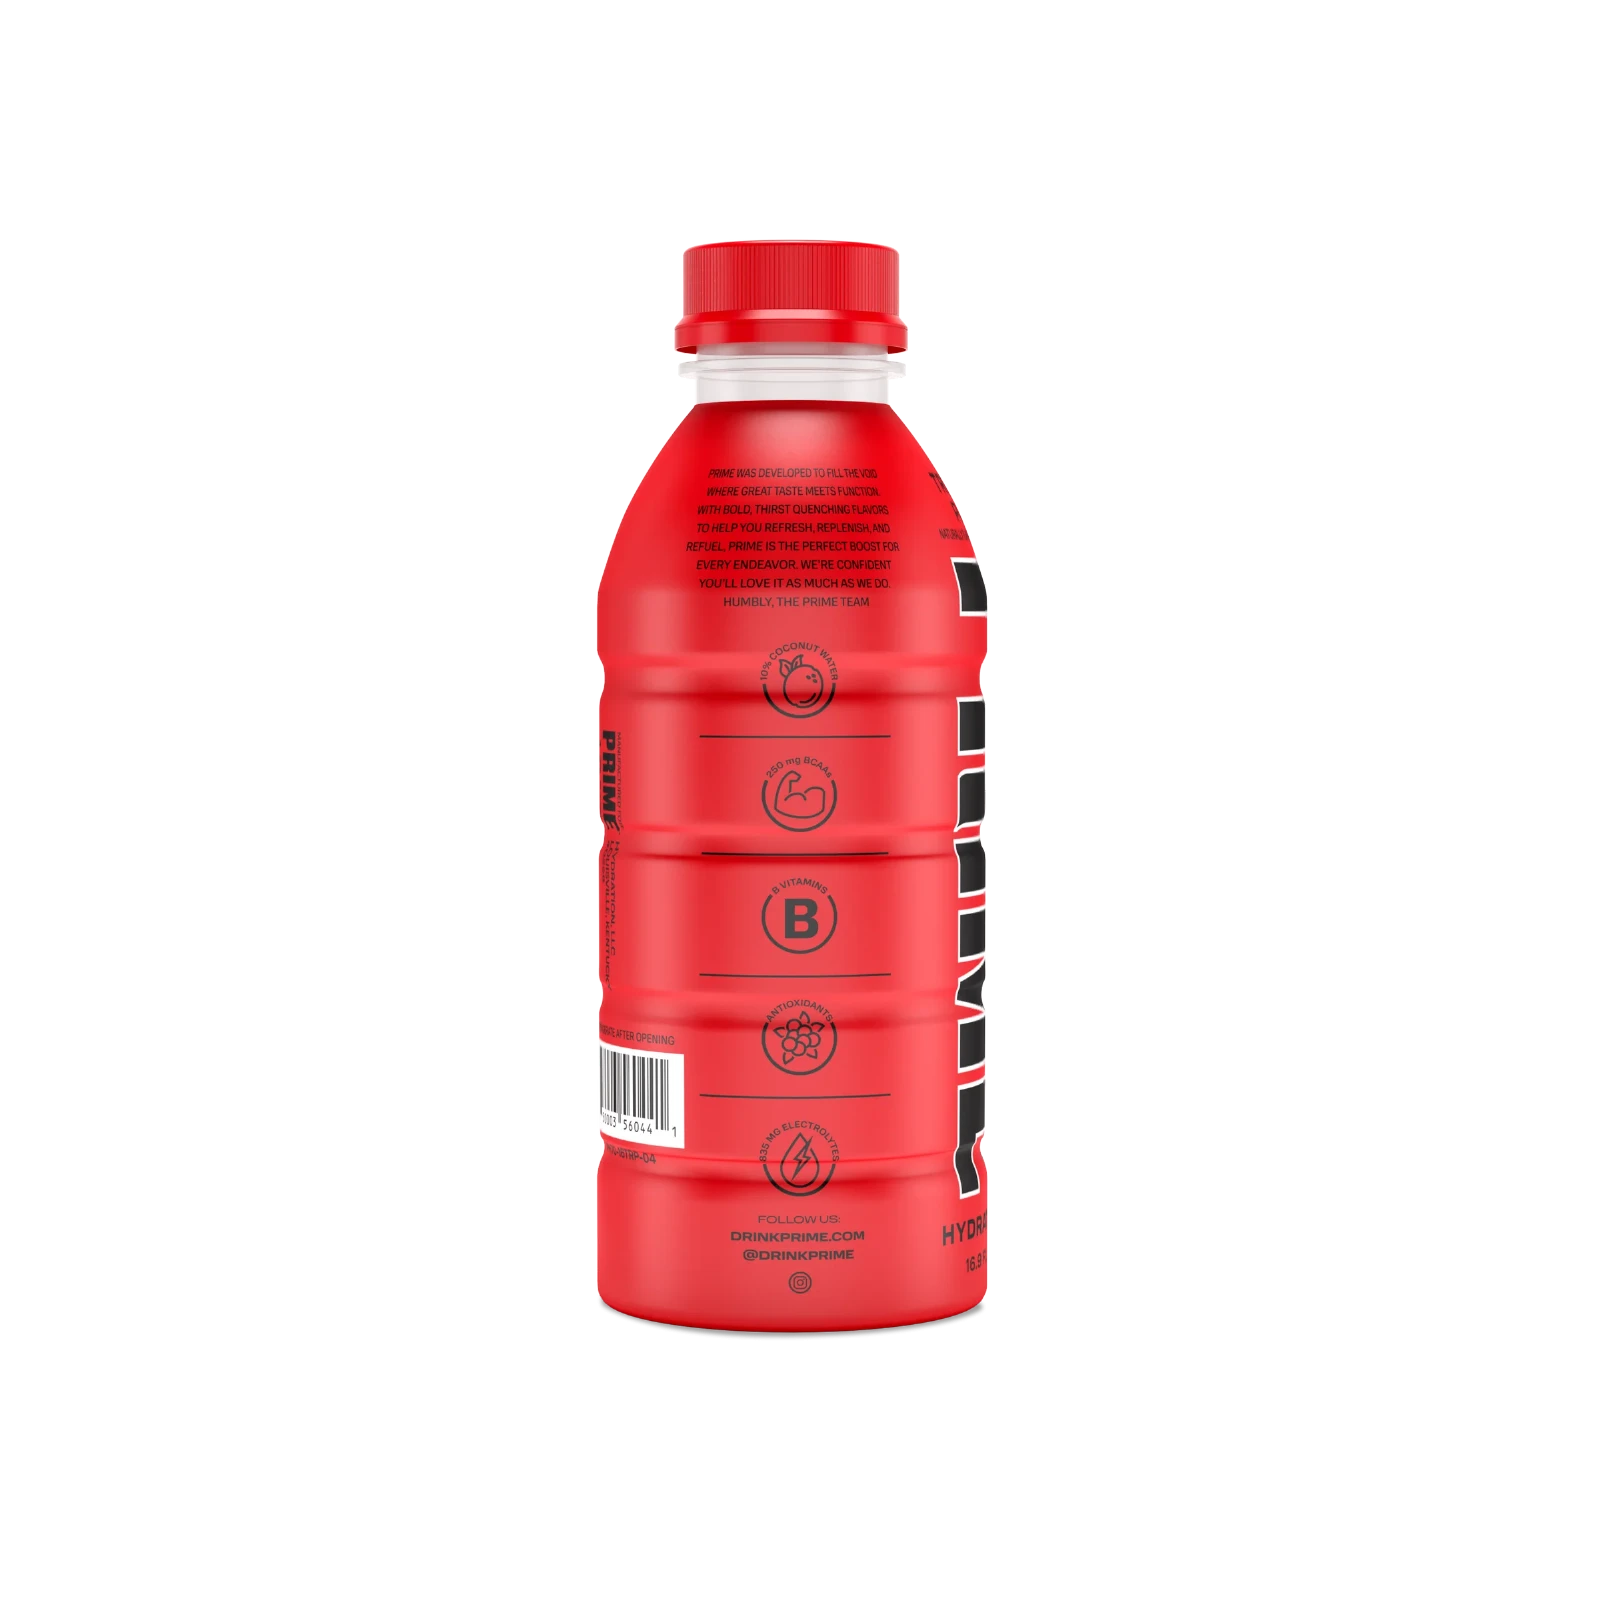 Prime Hydration - Sportdrink - Tropical Punch - 500 ml - Energy Drink von Logan Paul und KSI - Aus den USA 3